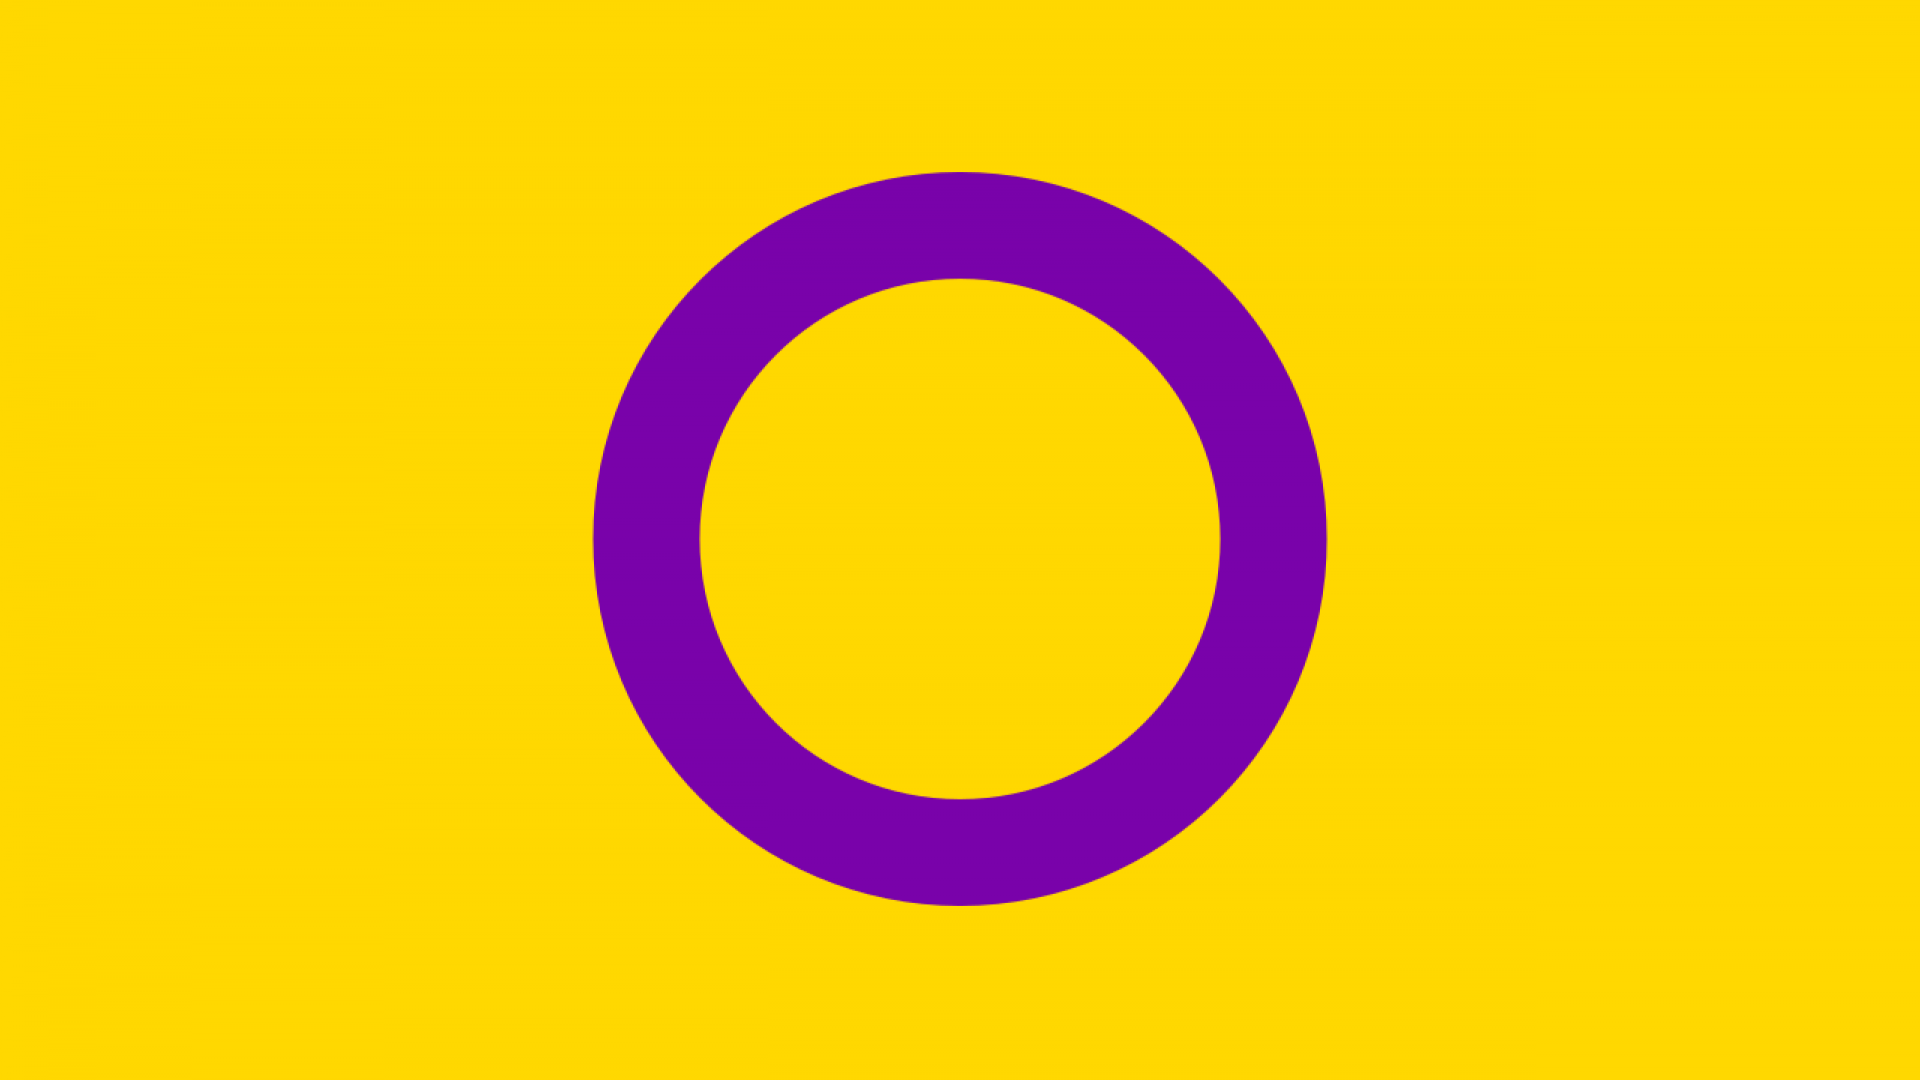 intersekse-vlag: een gele vlag met een cirkel in het midden